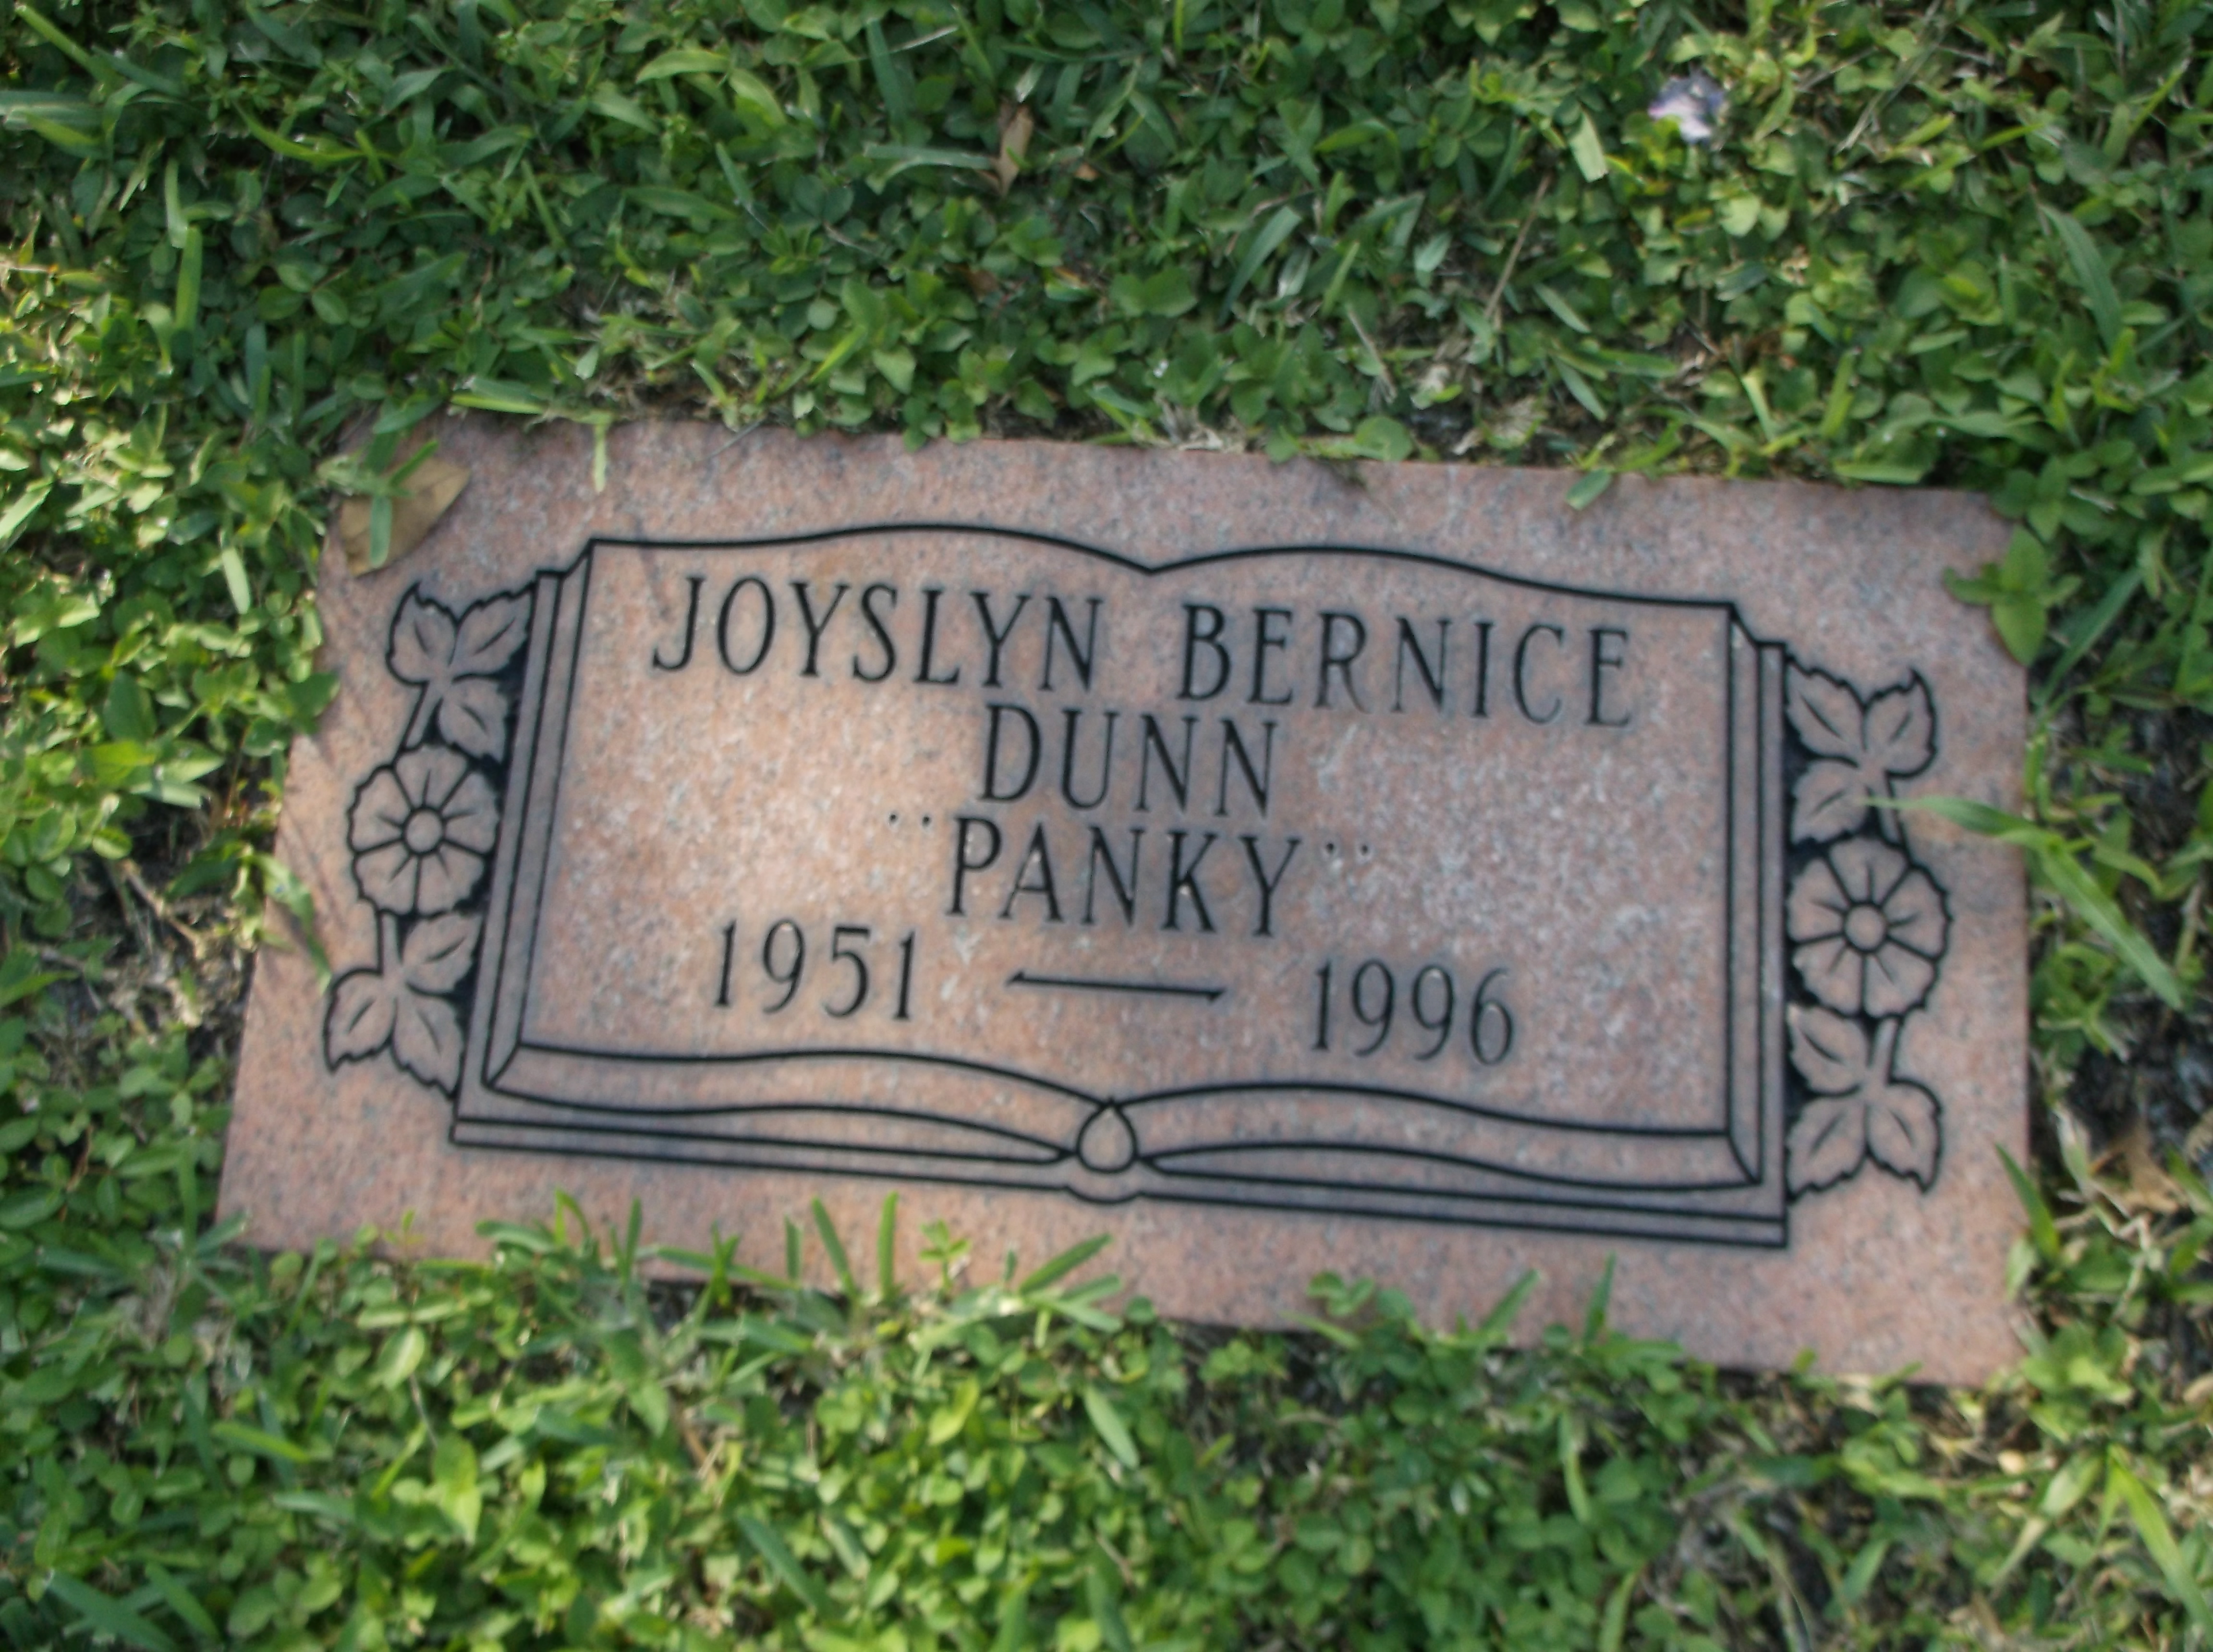 Joslyn Bernice "Panky" Dunn